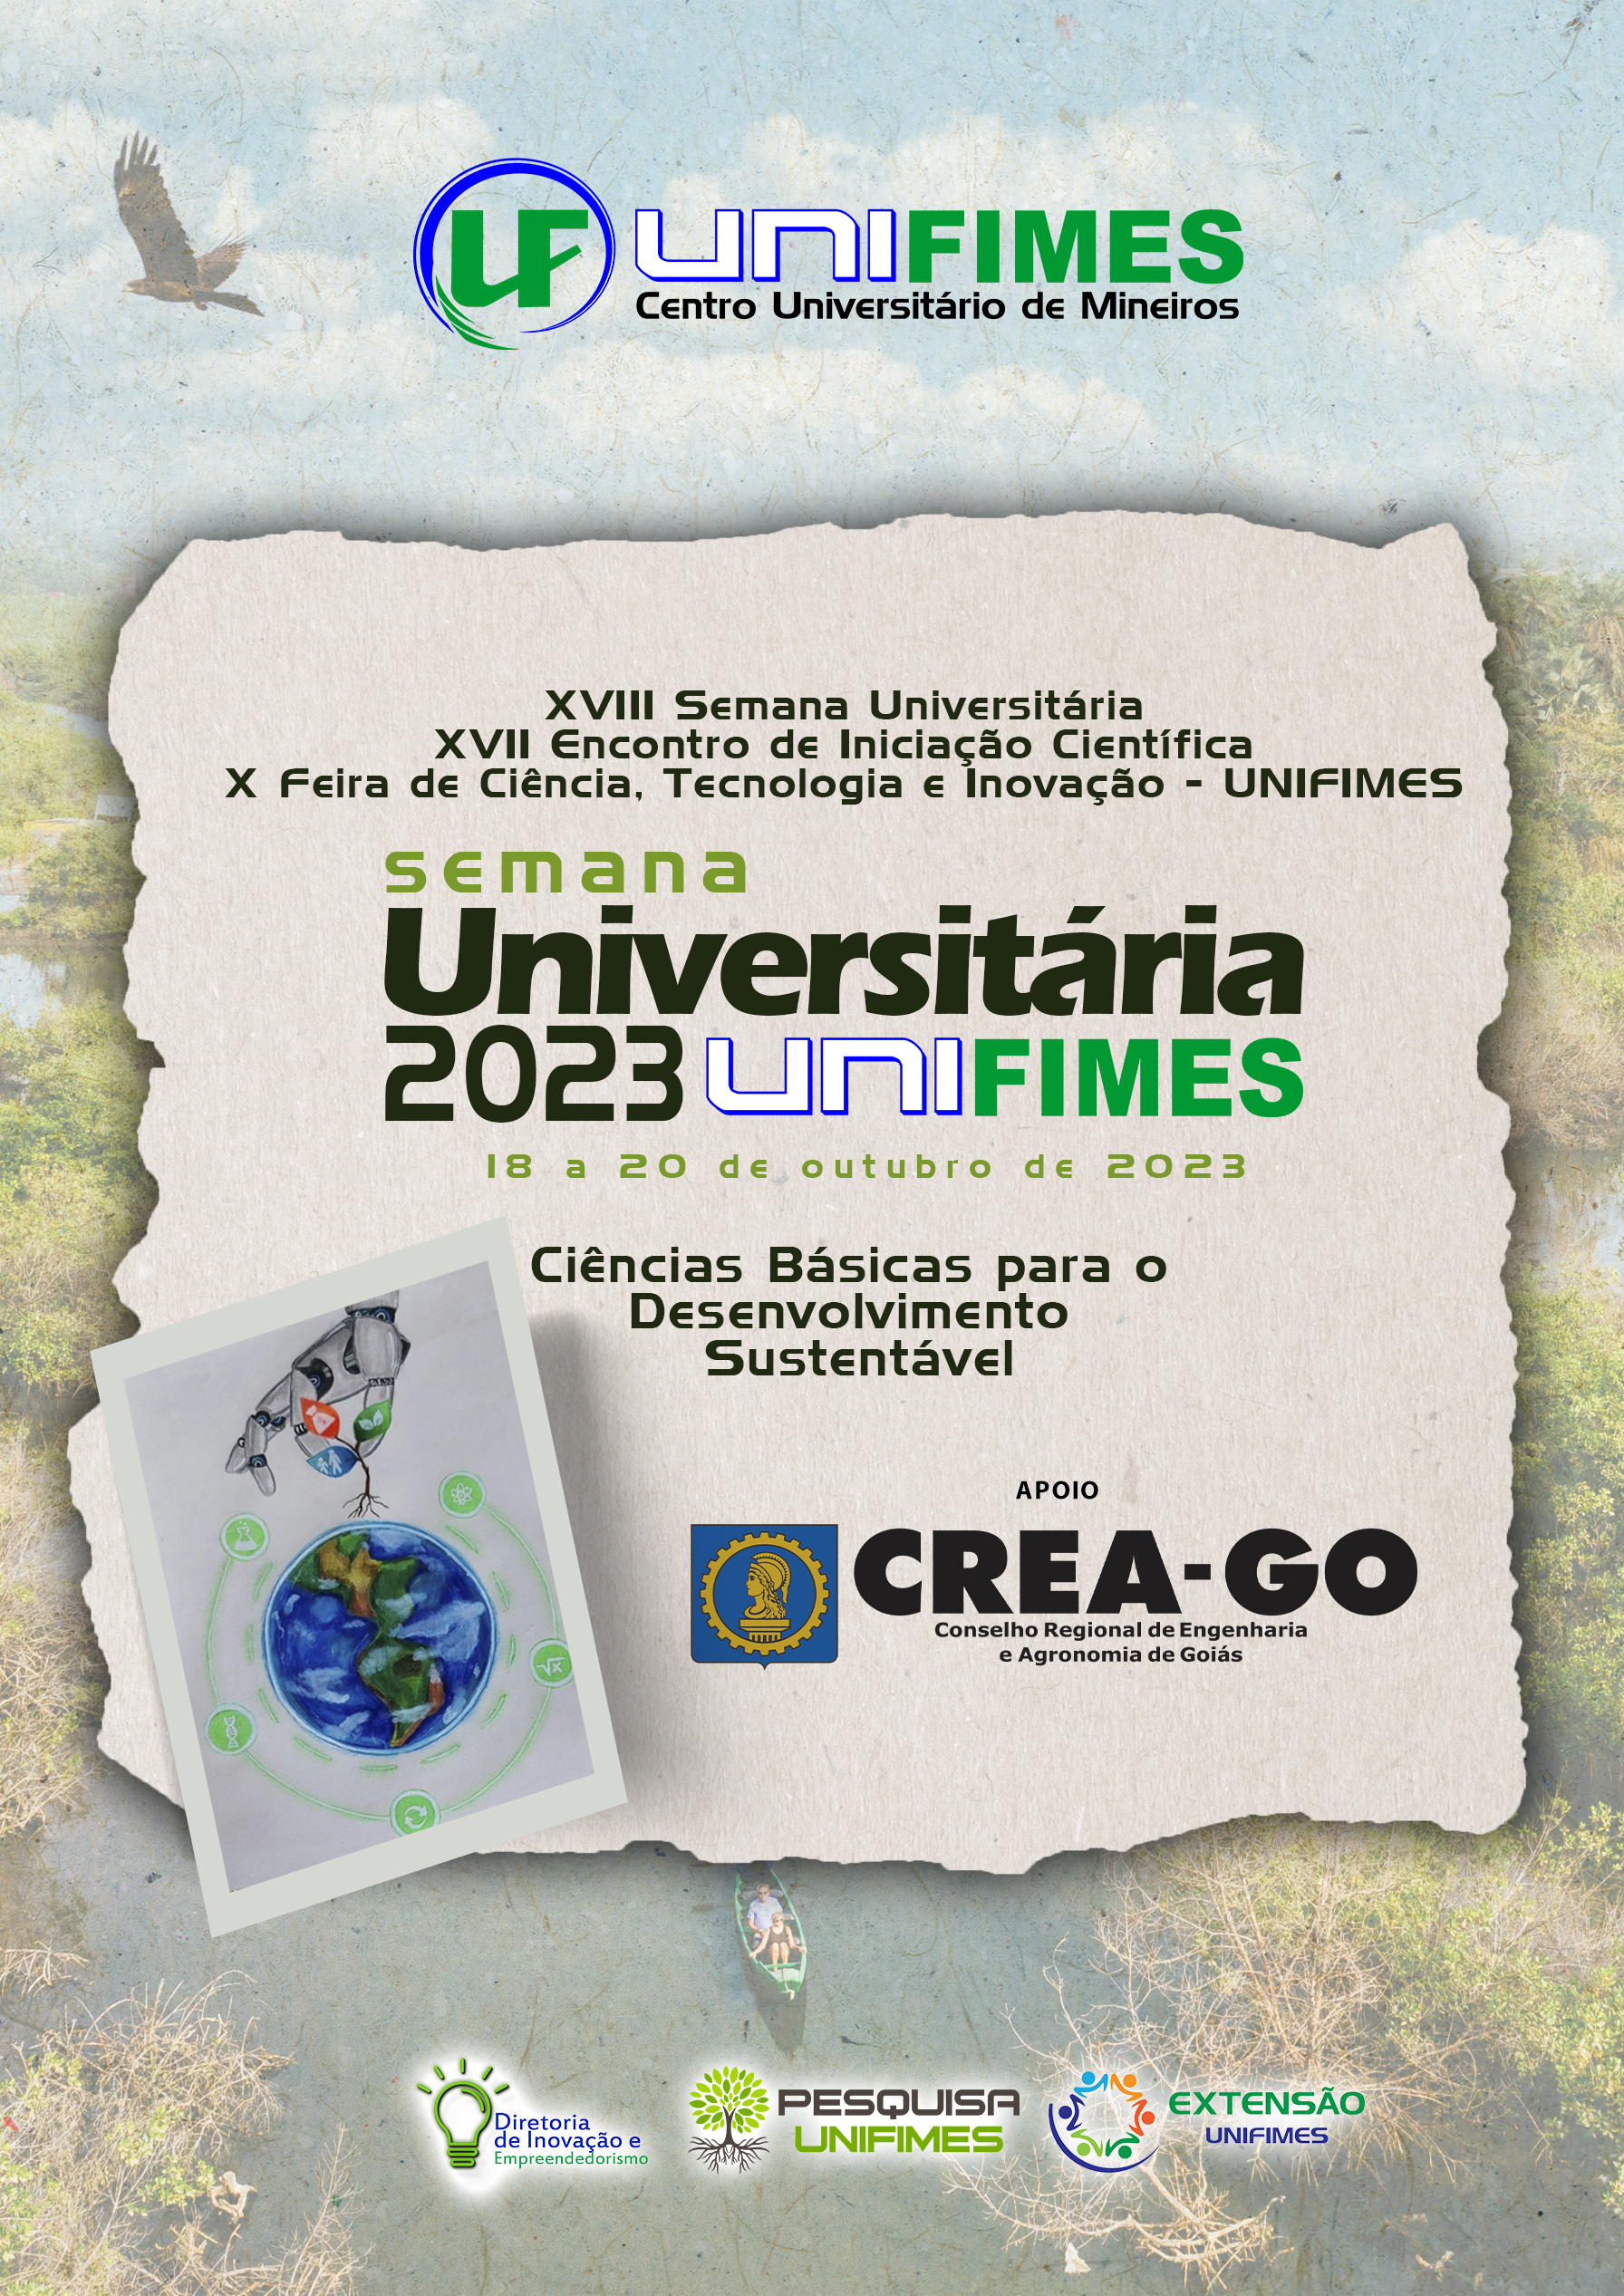 					Afficher Vol. 1 No. 1 (2023): XVIII Semana Universitária XVII Encontro de Iniciação Científica X Feira de Ciência, Tecnologia e Inovação - UNIFIMES
				